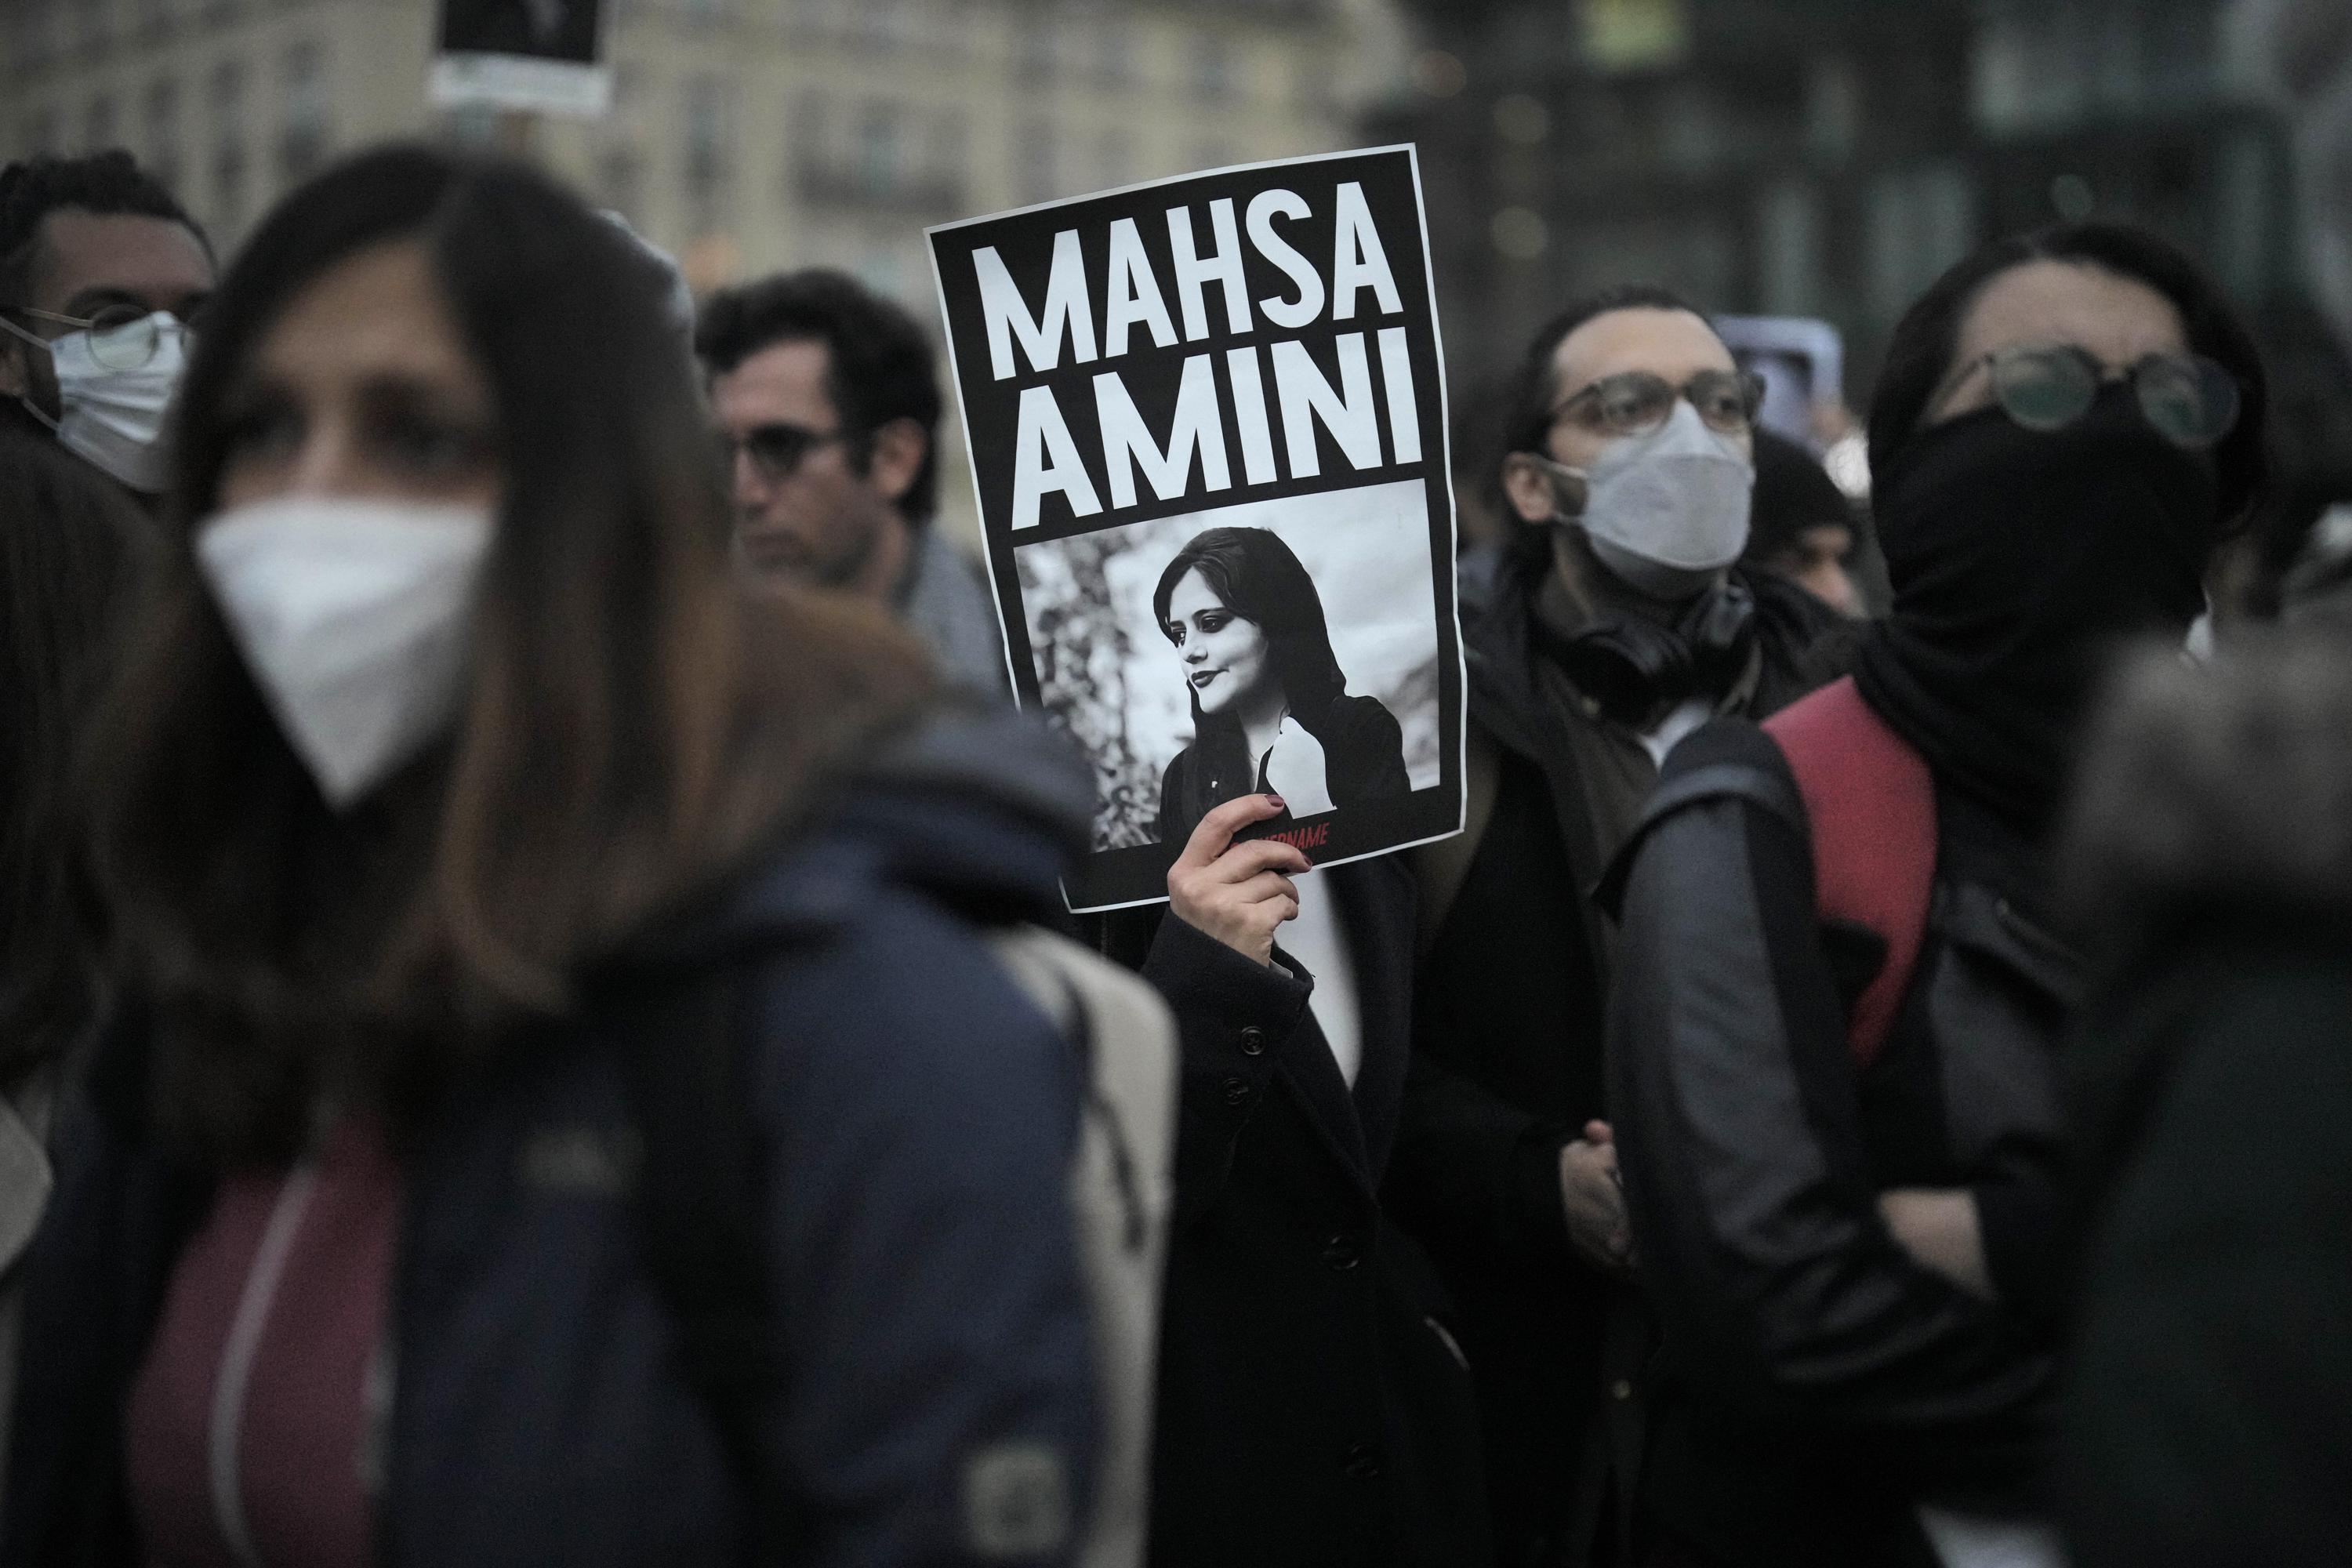 قوبلت الاحتجاجات الإيرانية على مقتل مهسا أميني بتأييد عالمي واسع 